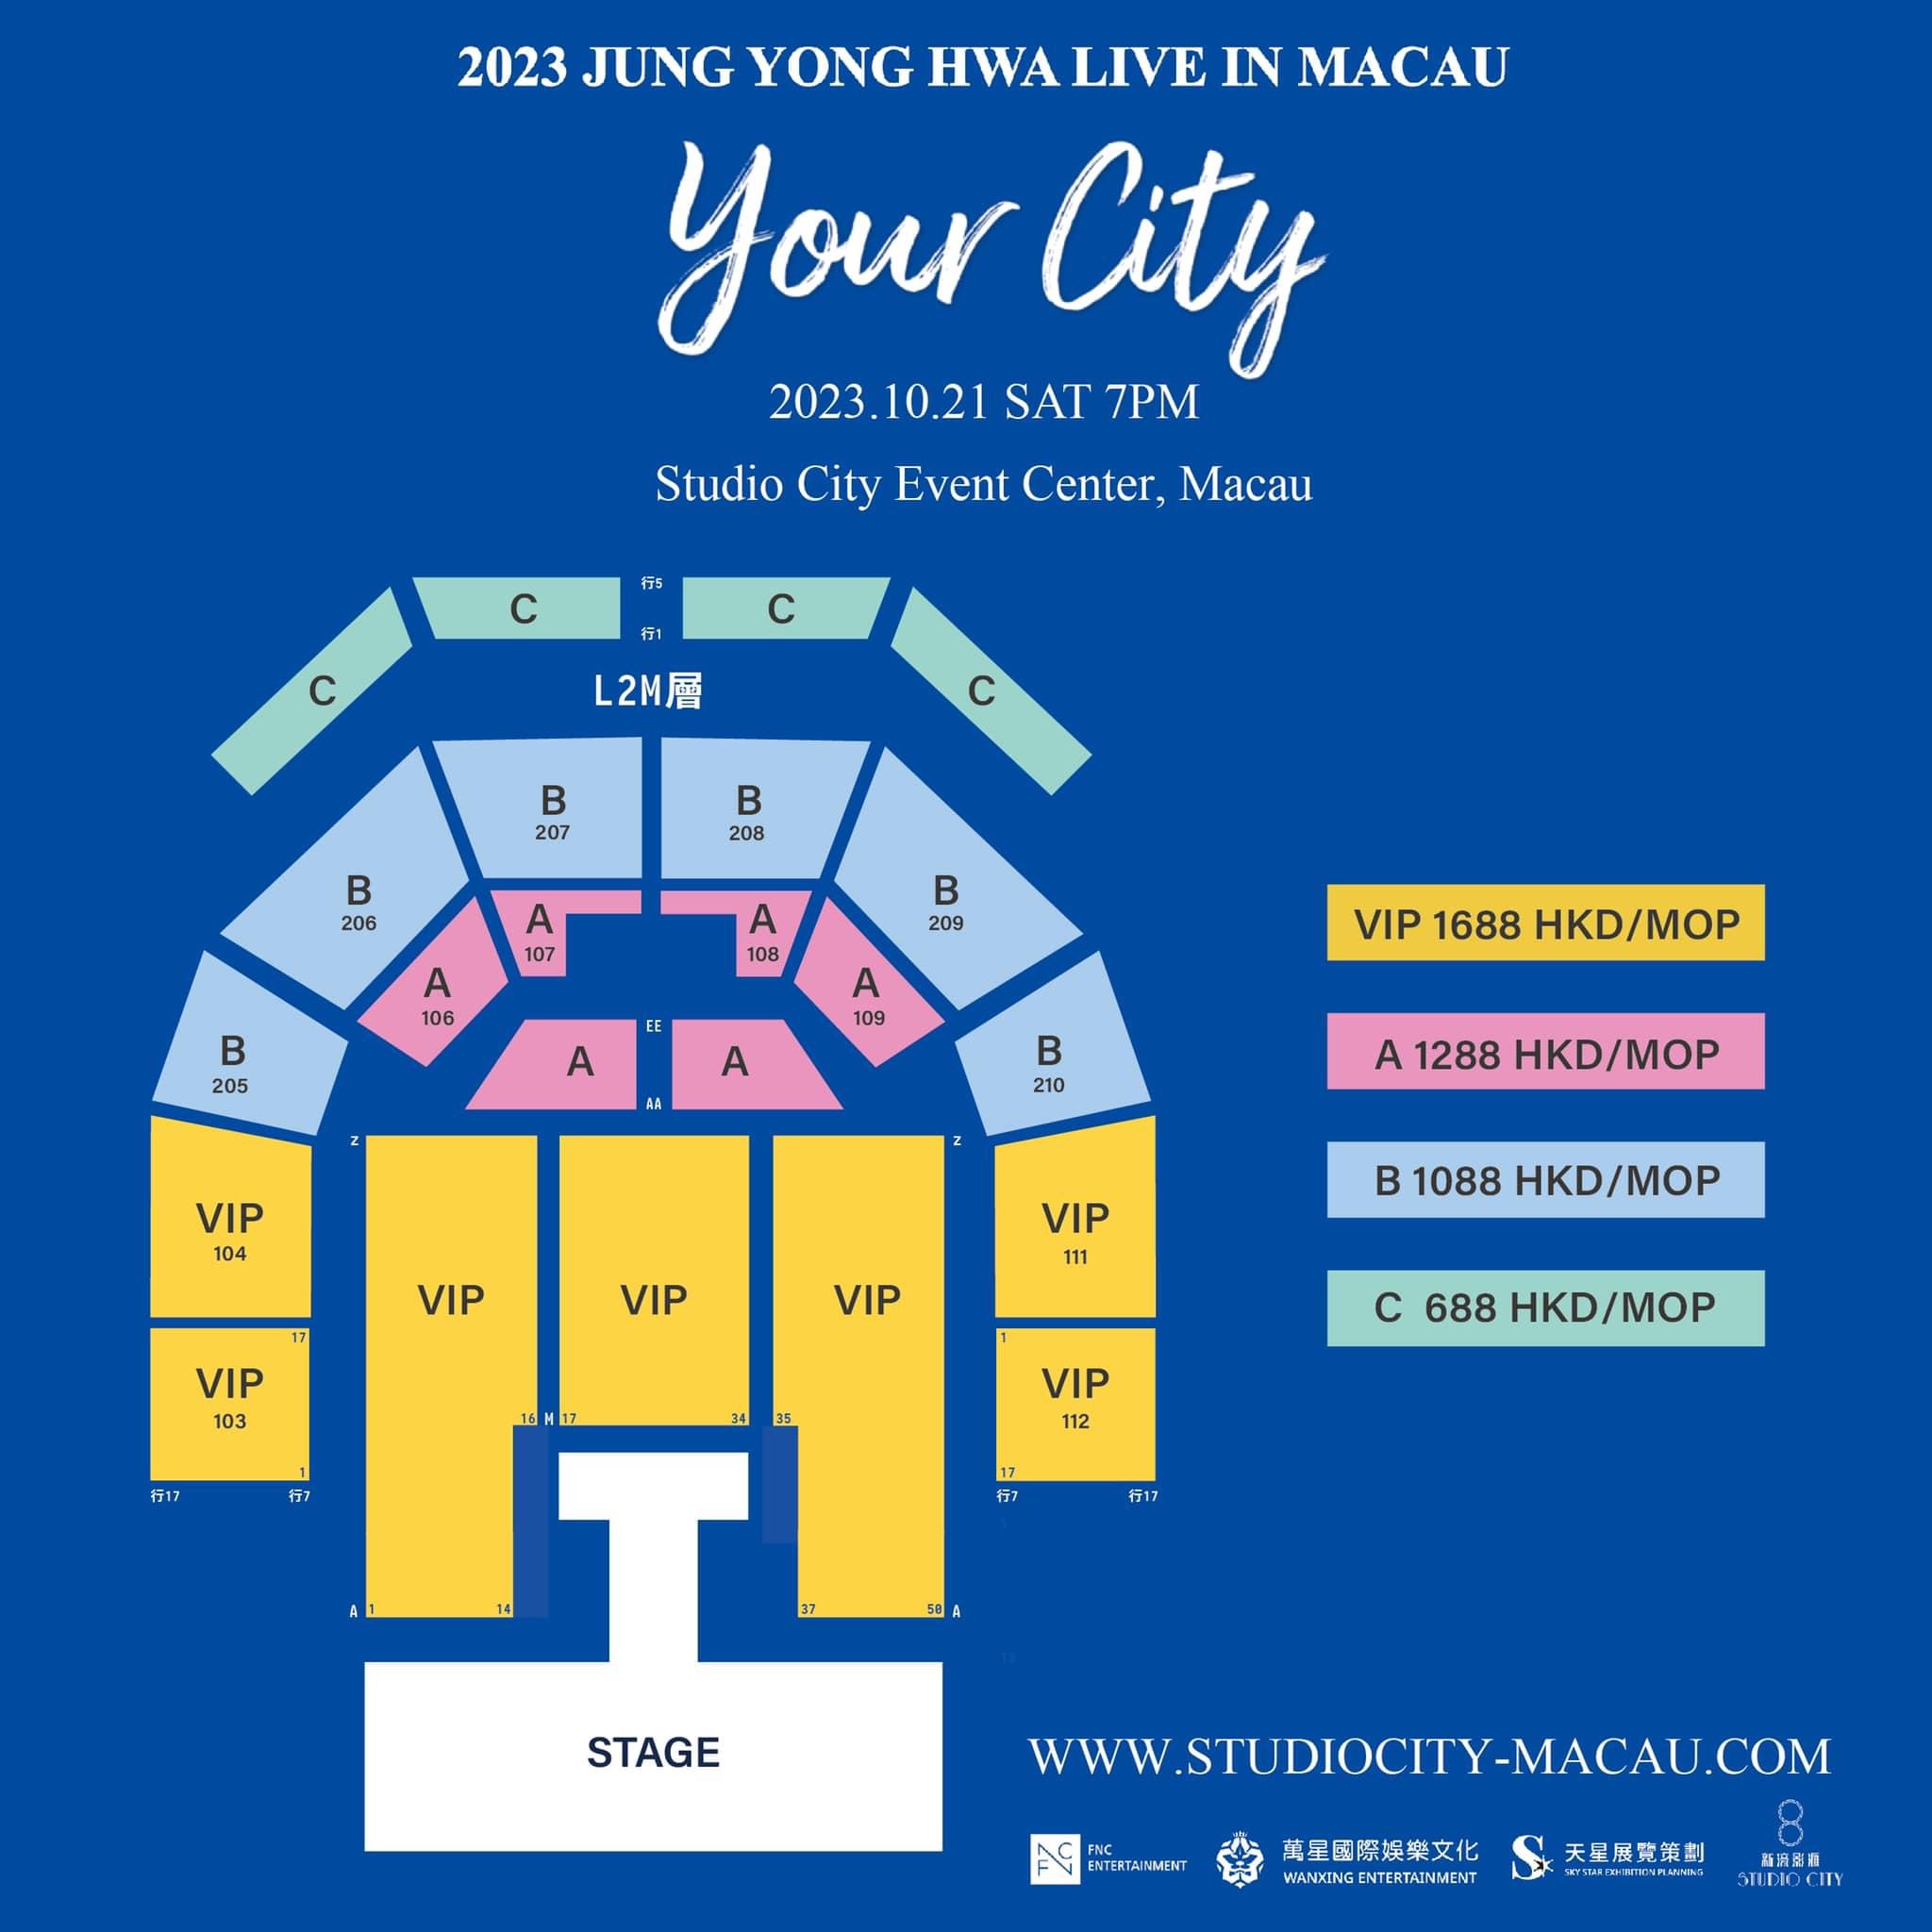 鄭容和 ‘Your City’ 演唱會 2023 澳門站